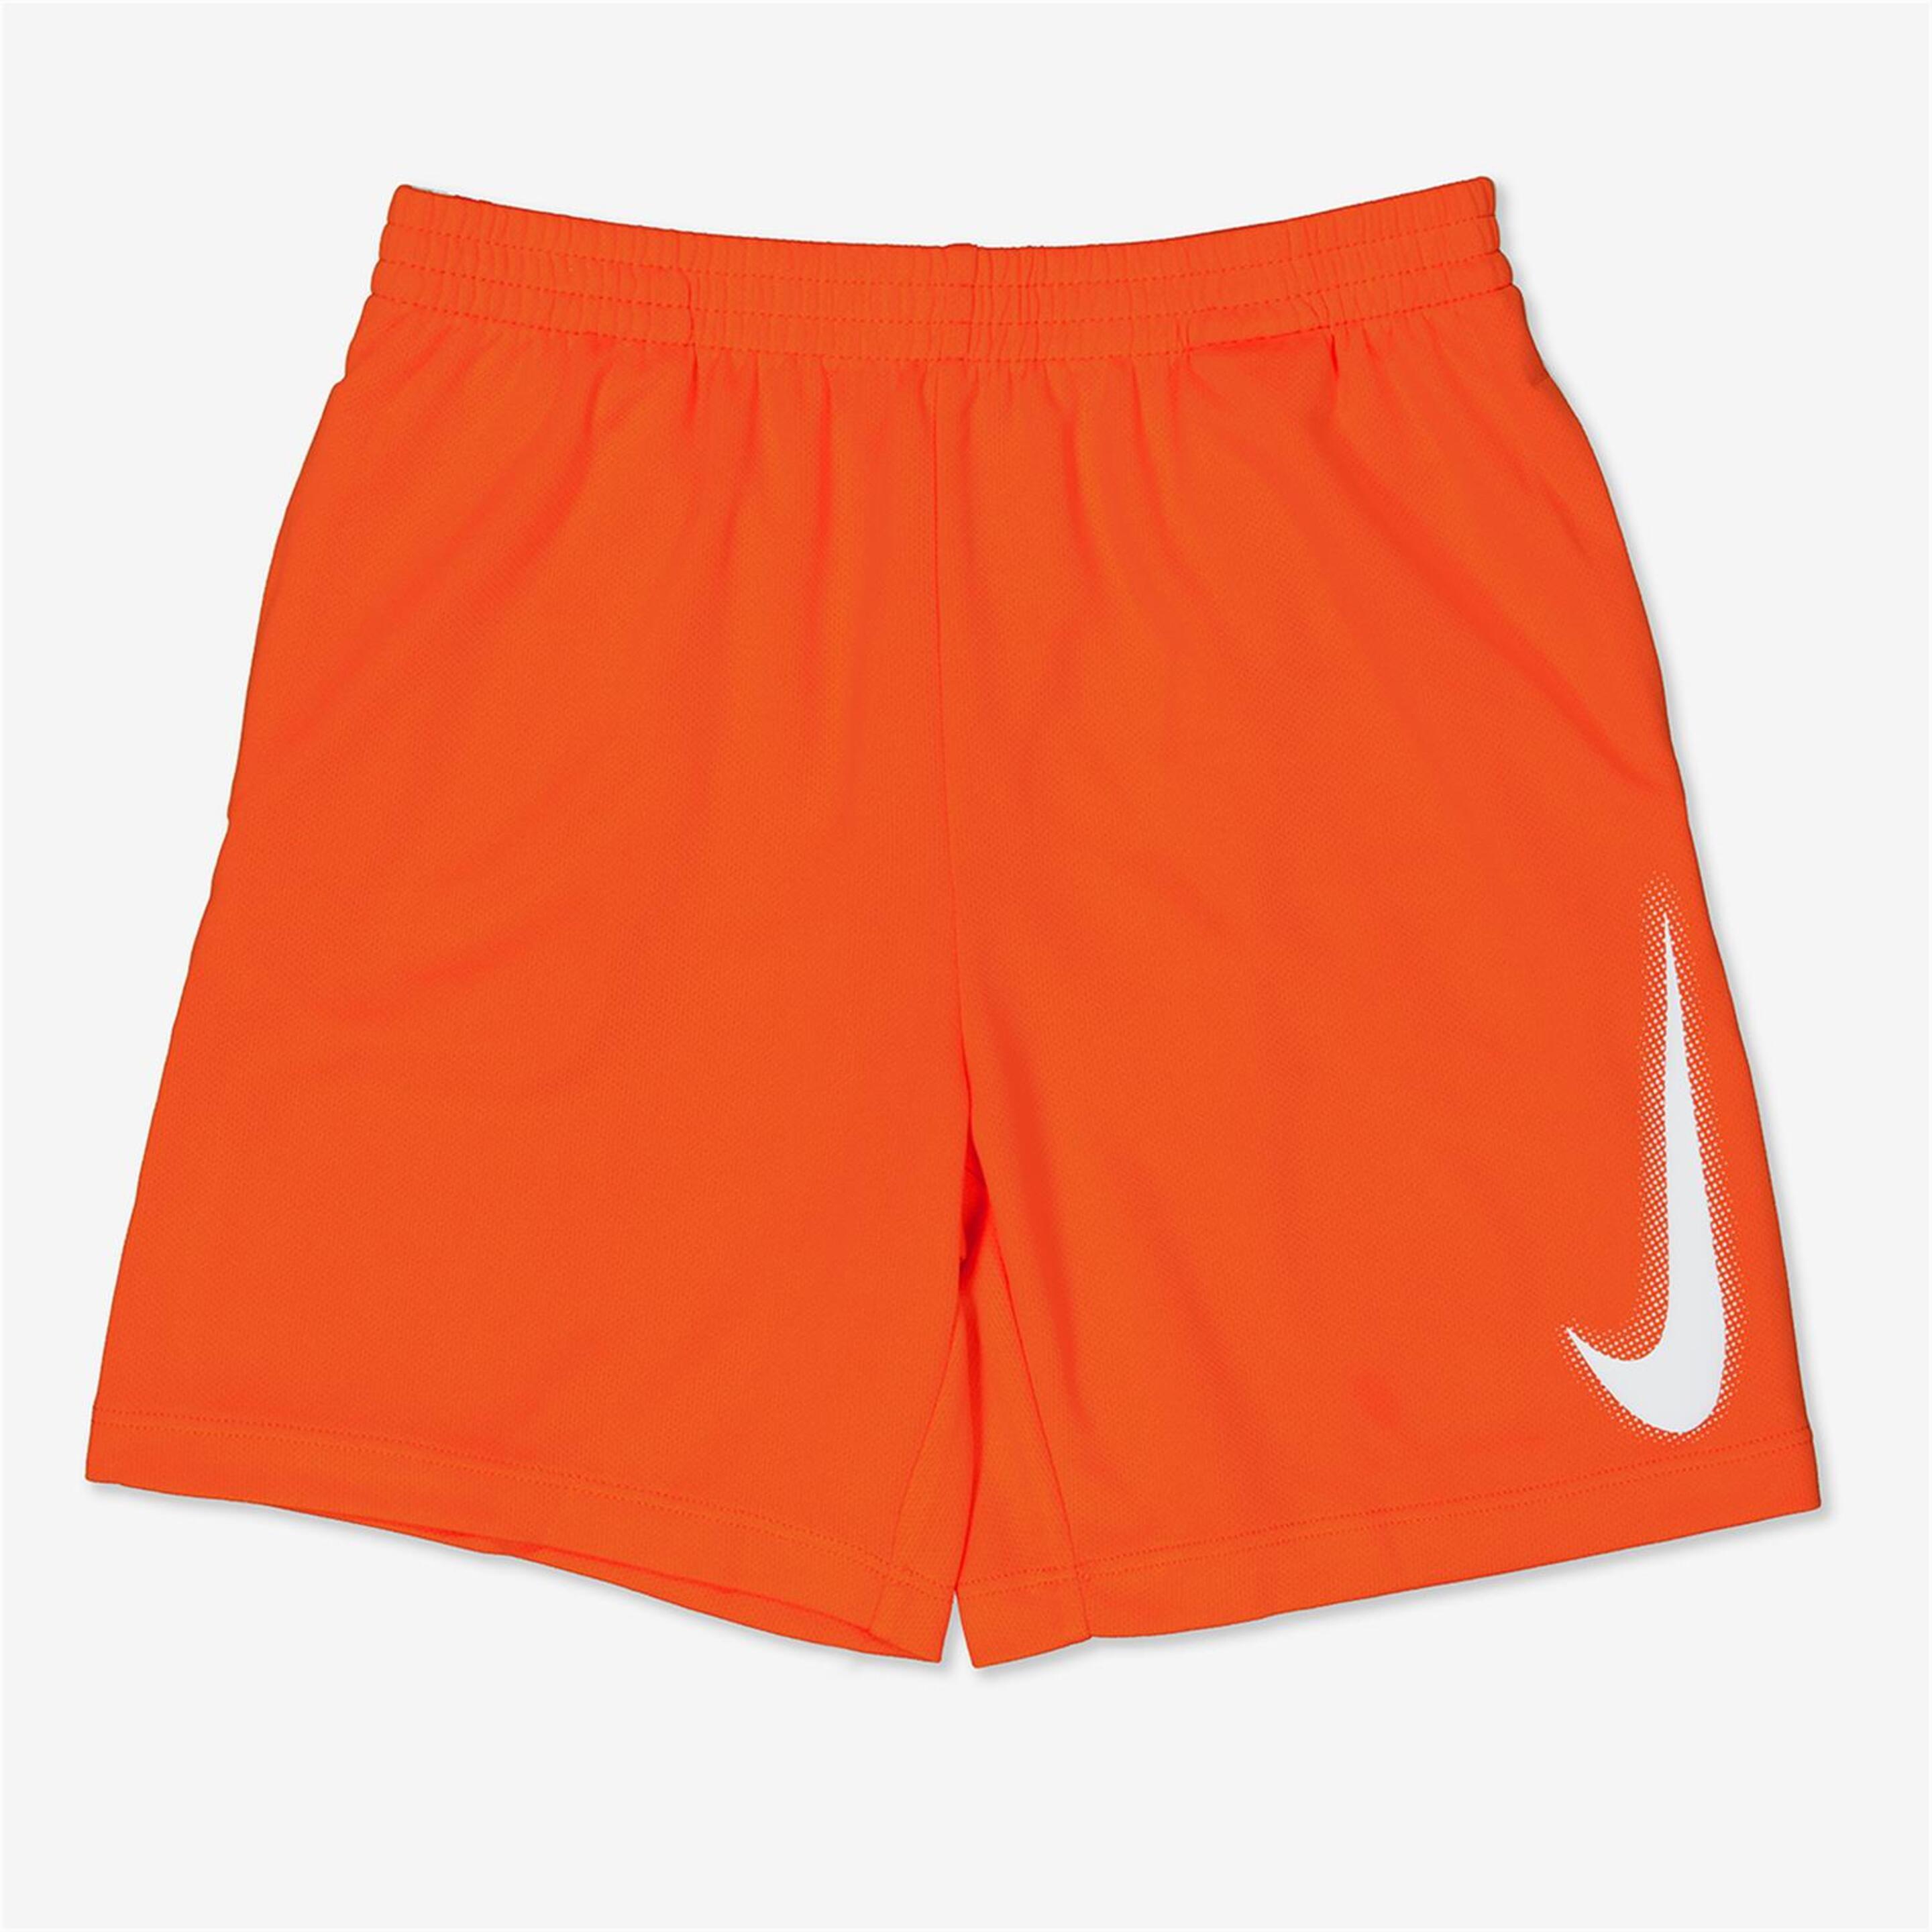 Pantalón Nike - naranja - Pantalón Corto Niño